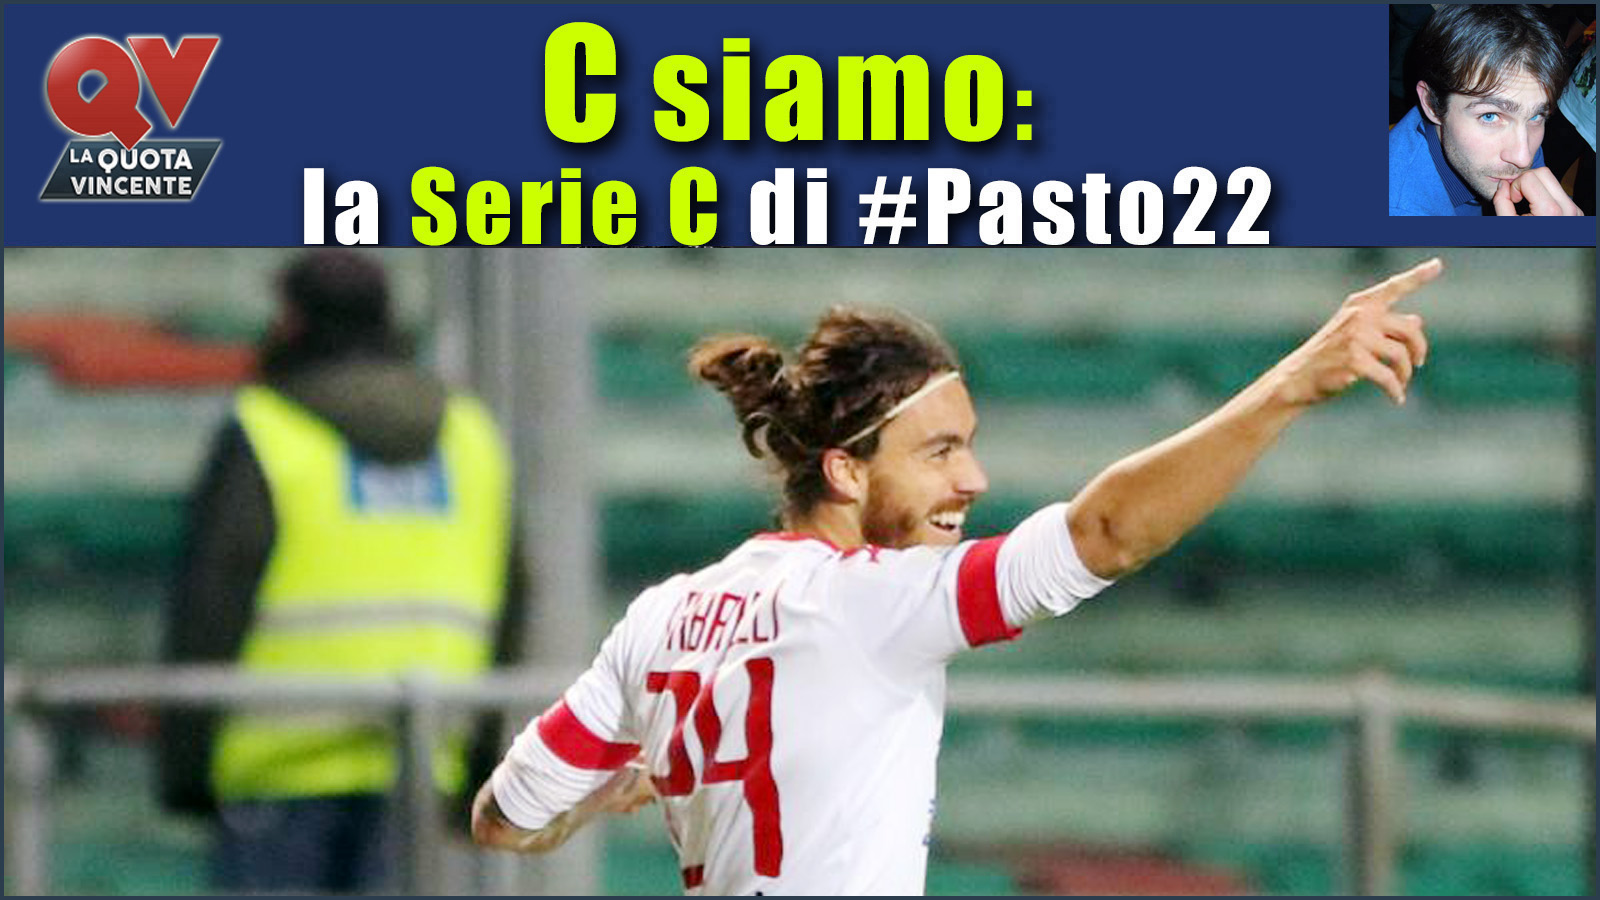 Pronostici Serie C sabato 25 novembre: #Csiamo, il blog di #Pasto22